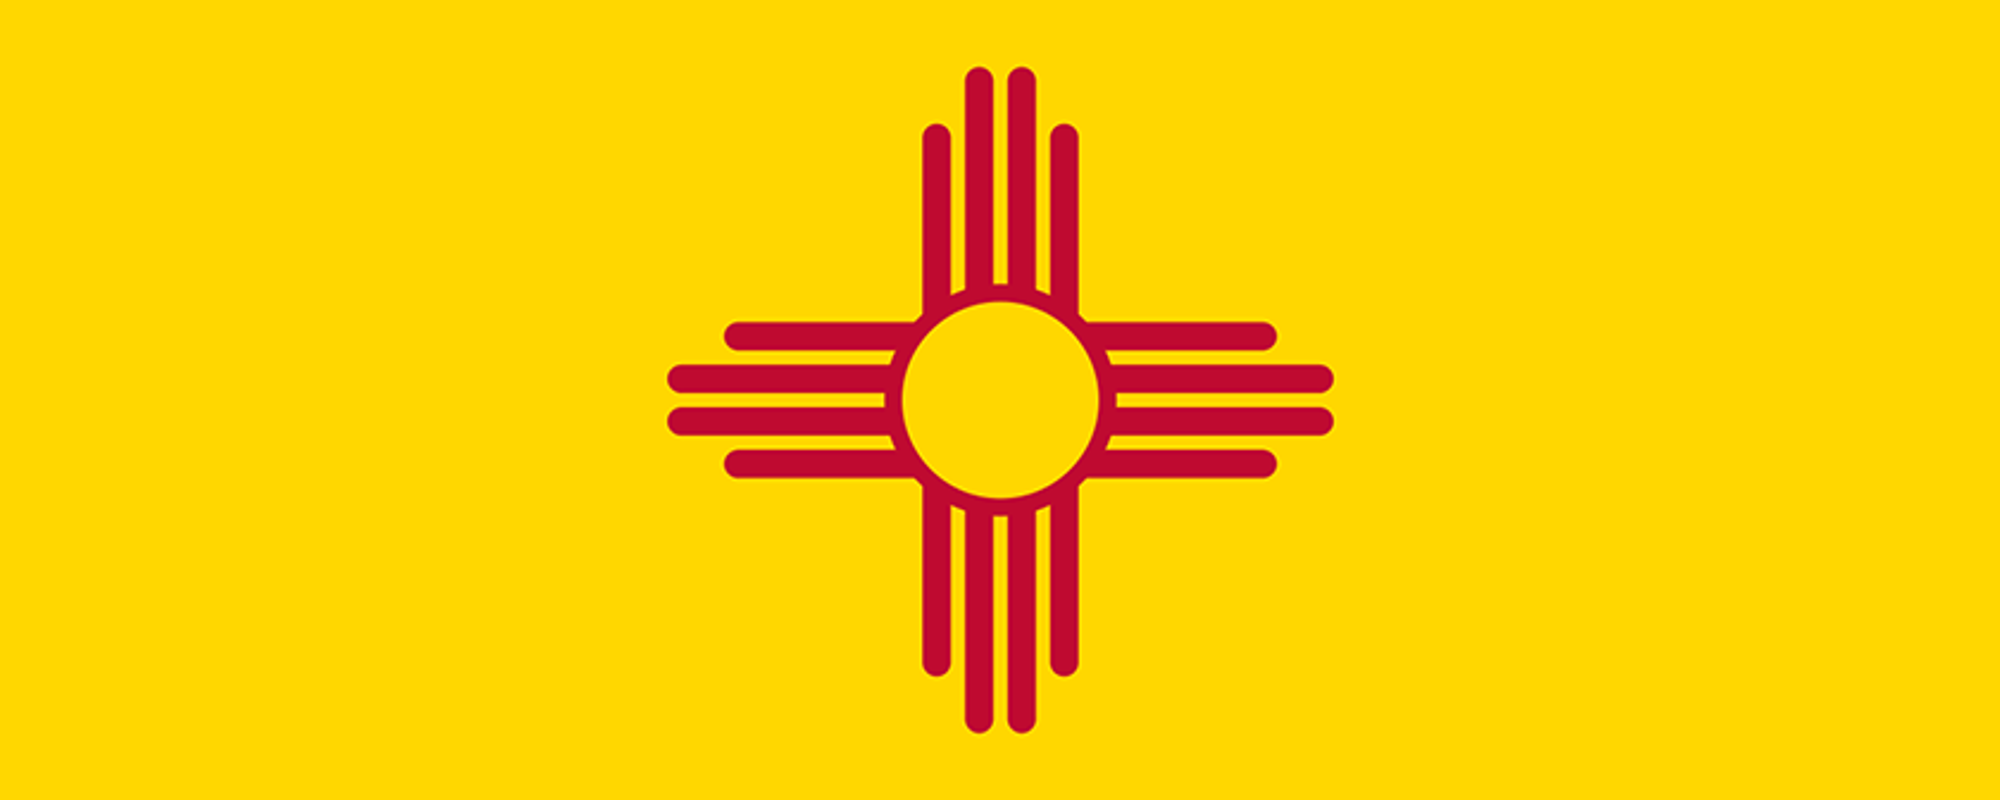 New Mexico Bound - Amarillo, Texas, to Albuquerque, New Mexico